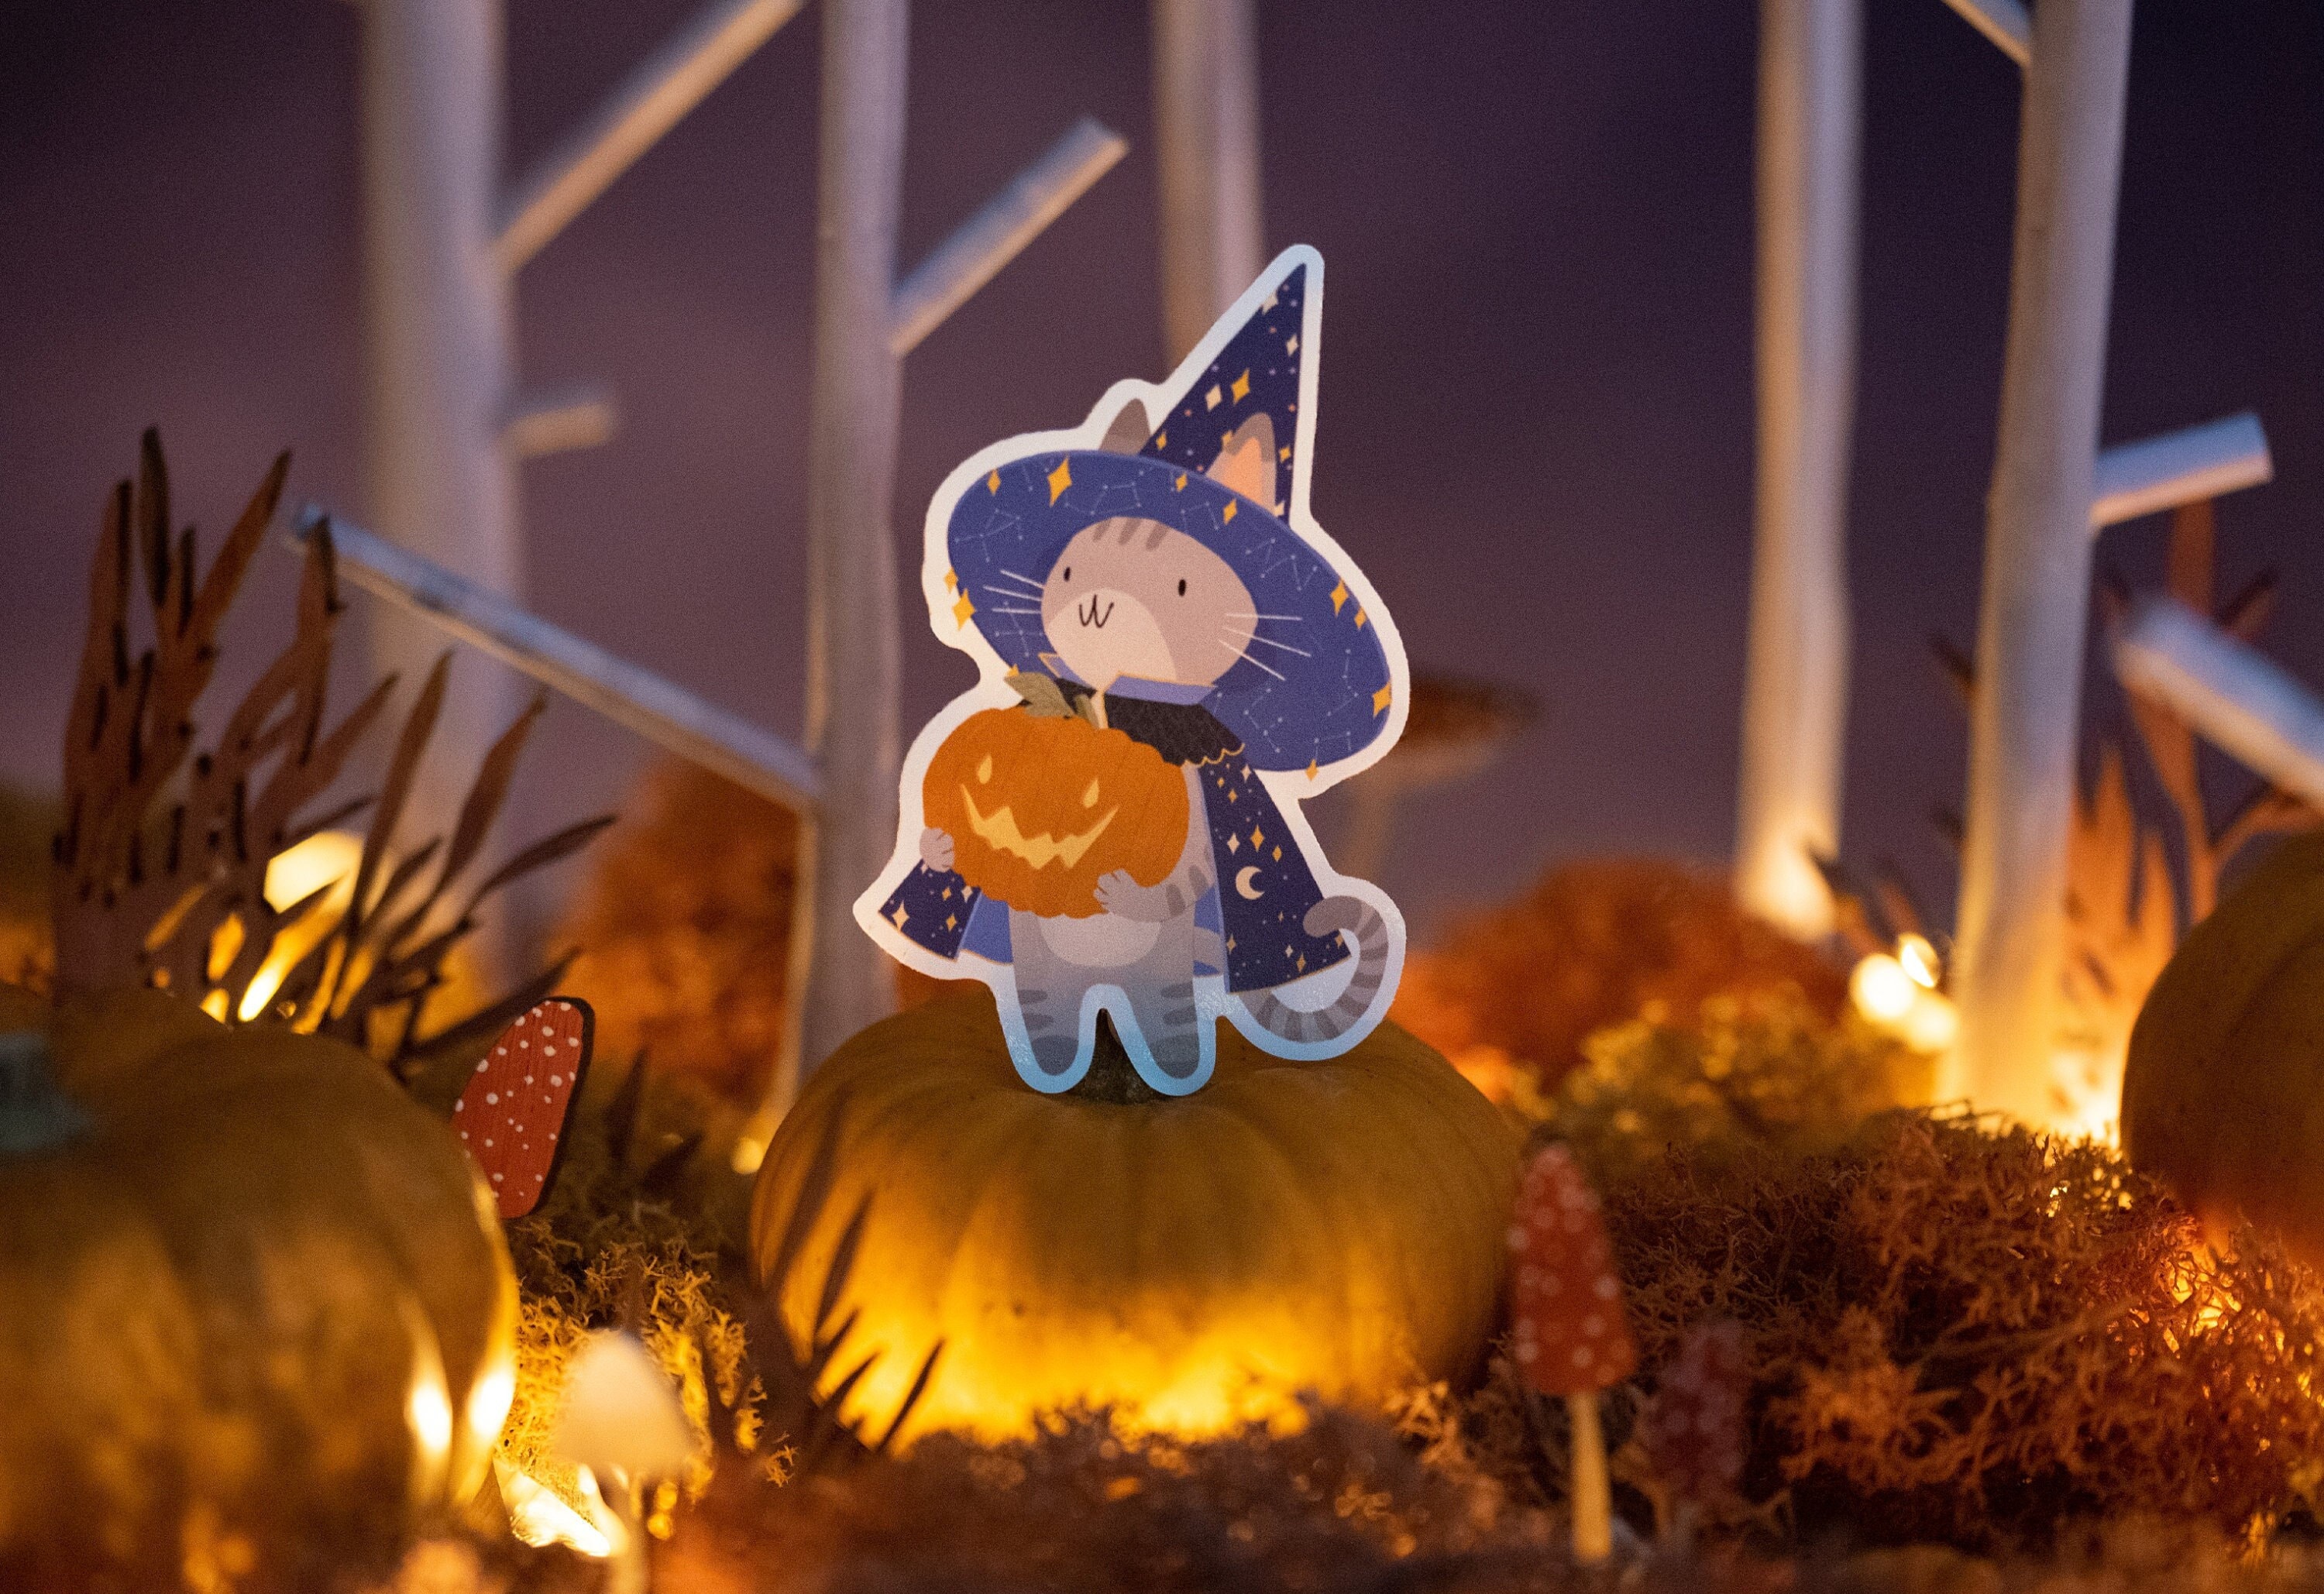 Glow In The Dark Halloween Stickers Pumpkins & Cats 🎃